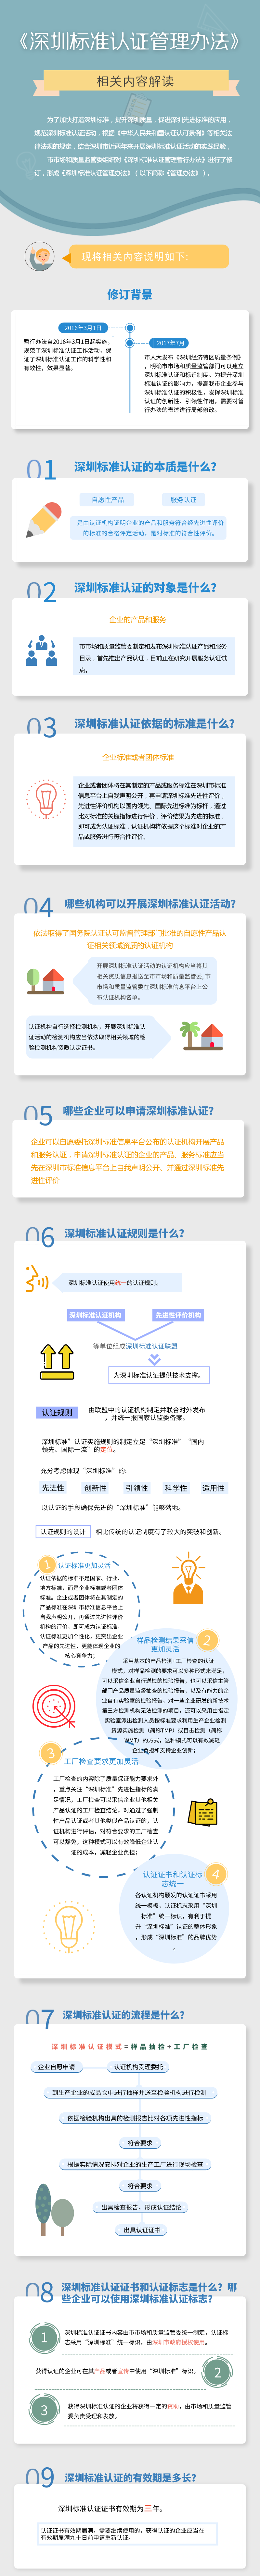 深圳标准认证管理办法.png